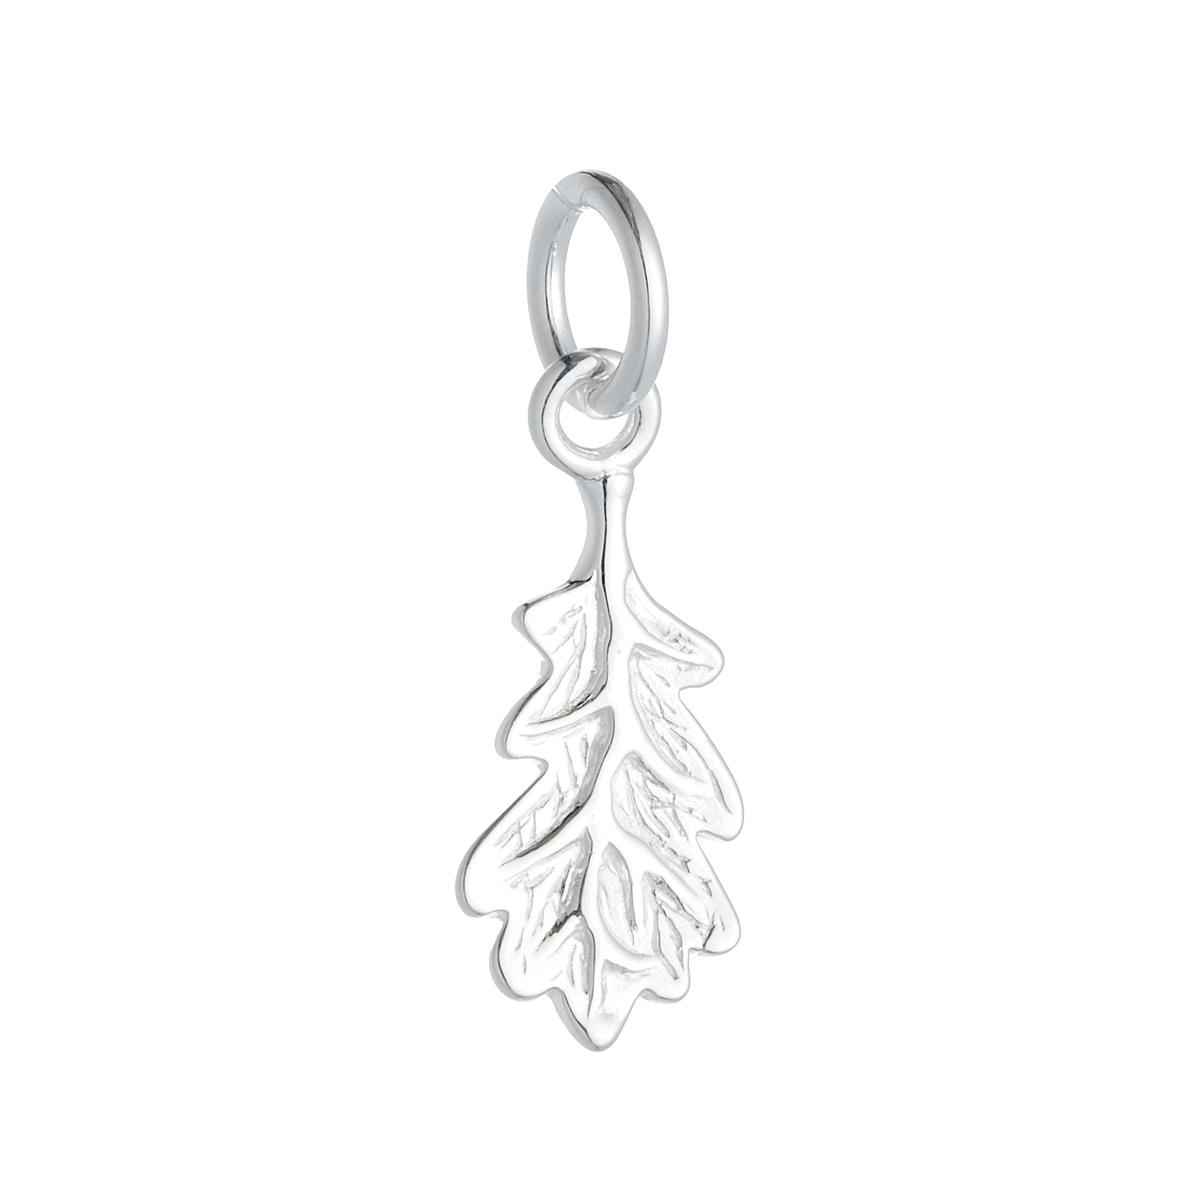 solid silver oak leaf charm for a bracelet or necklace